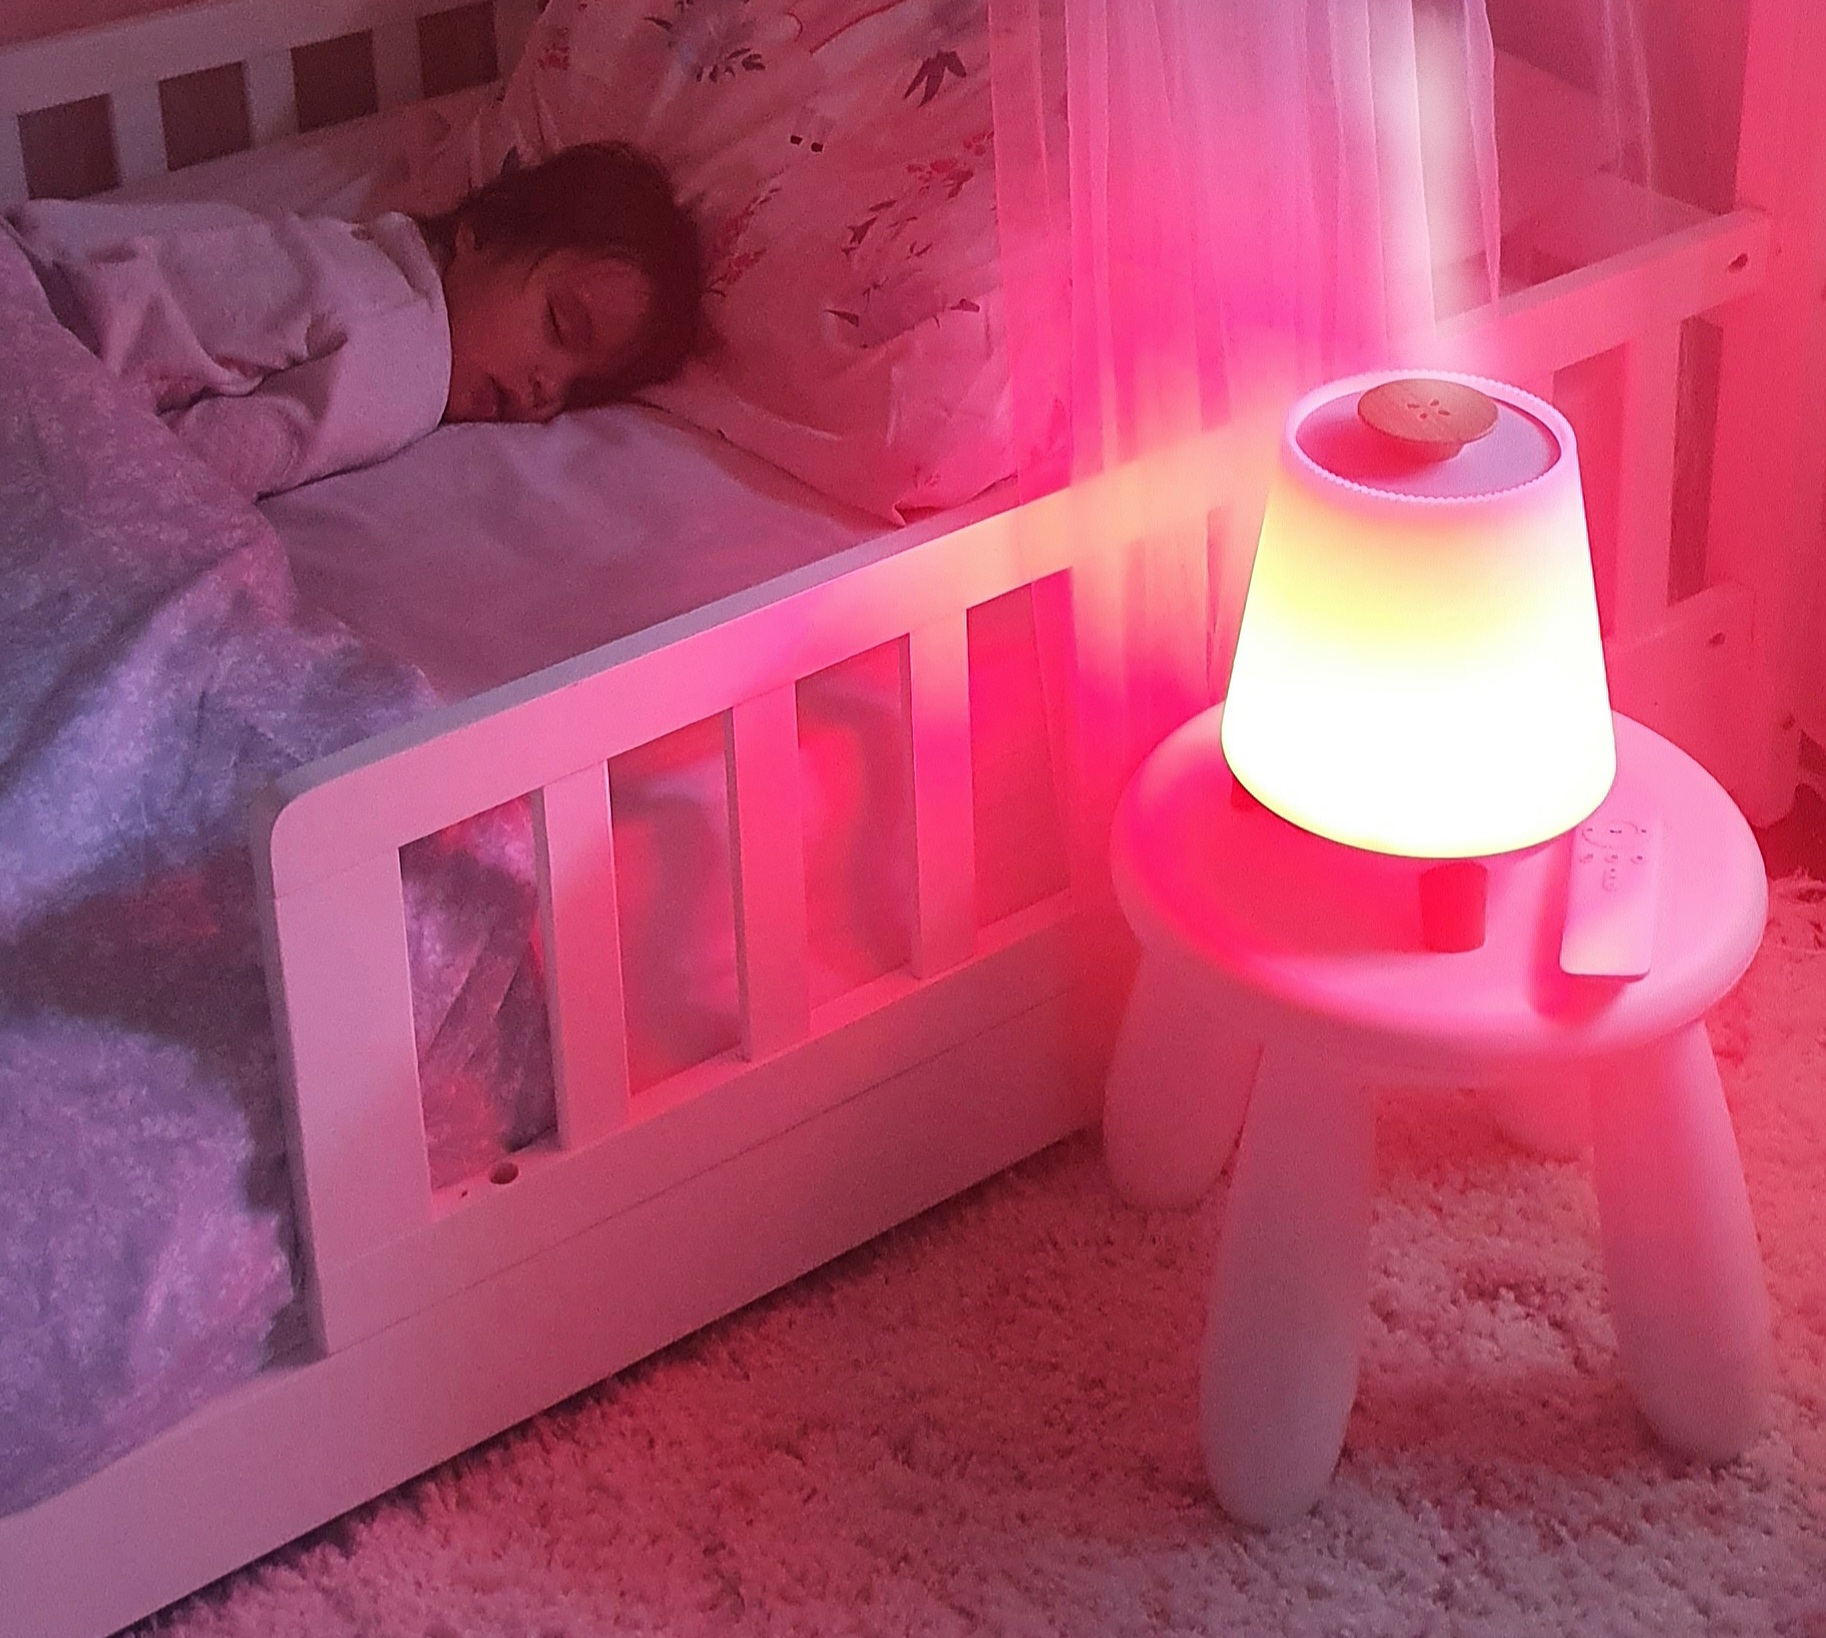 Baby Vaporiser with red light setting